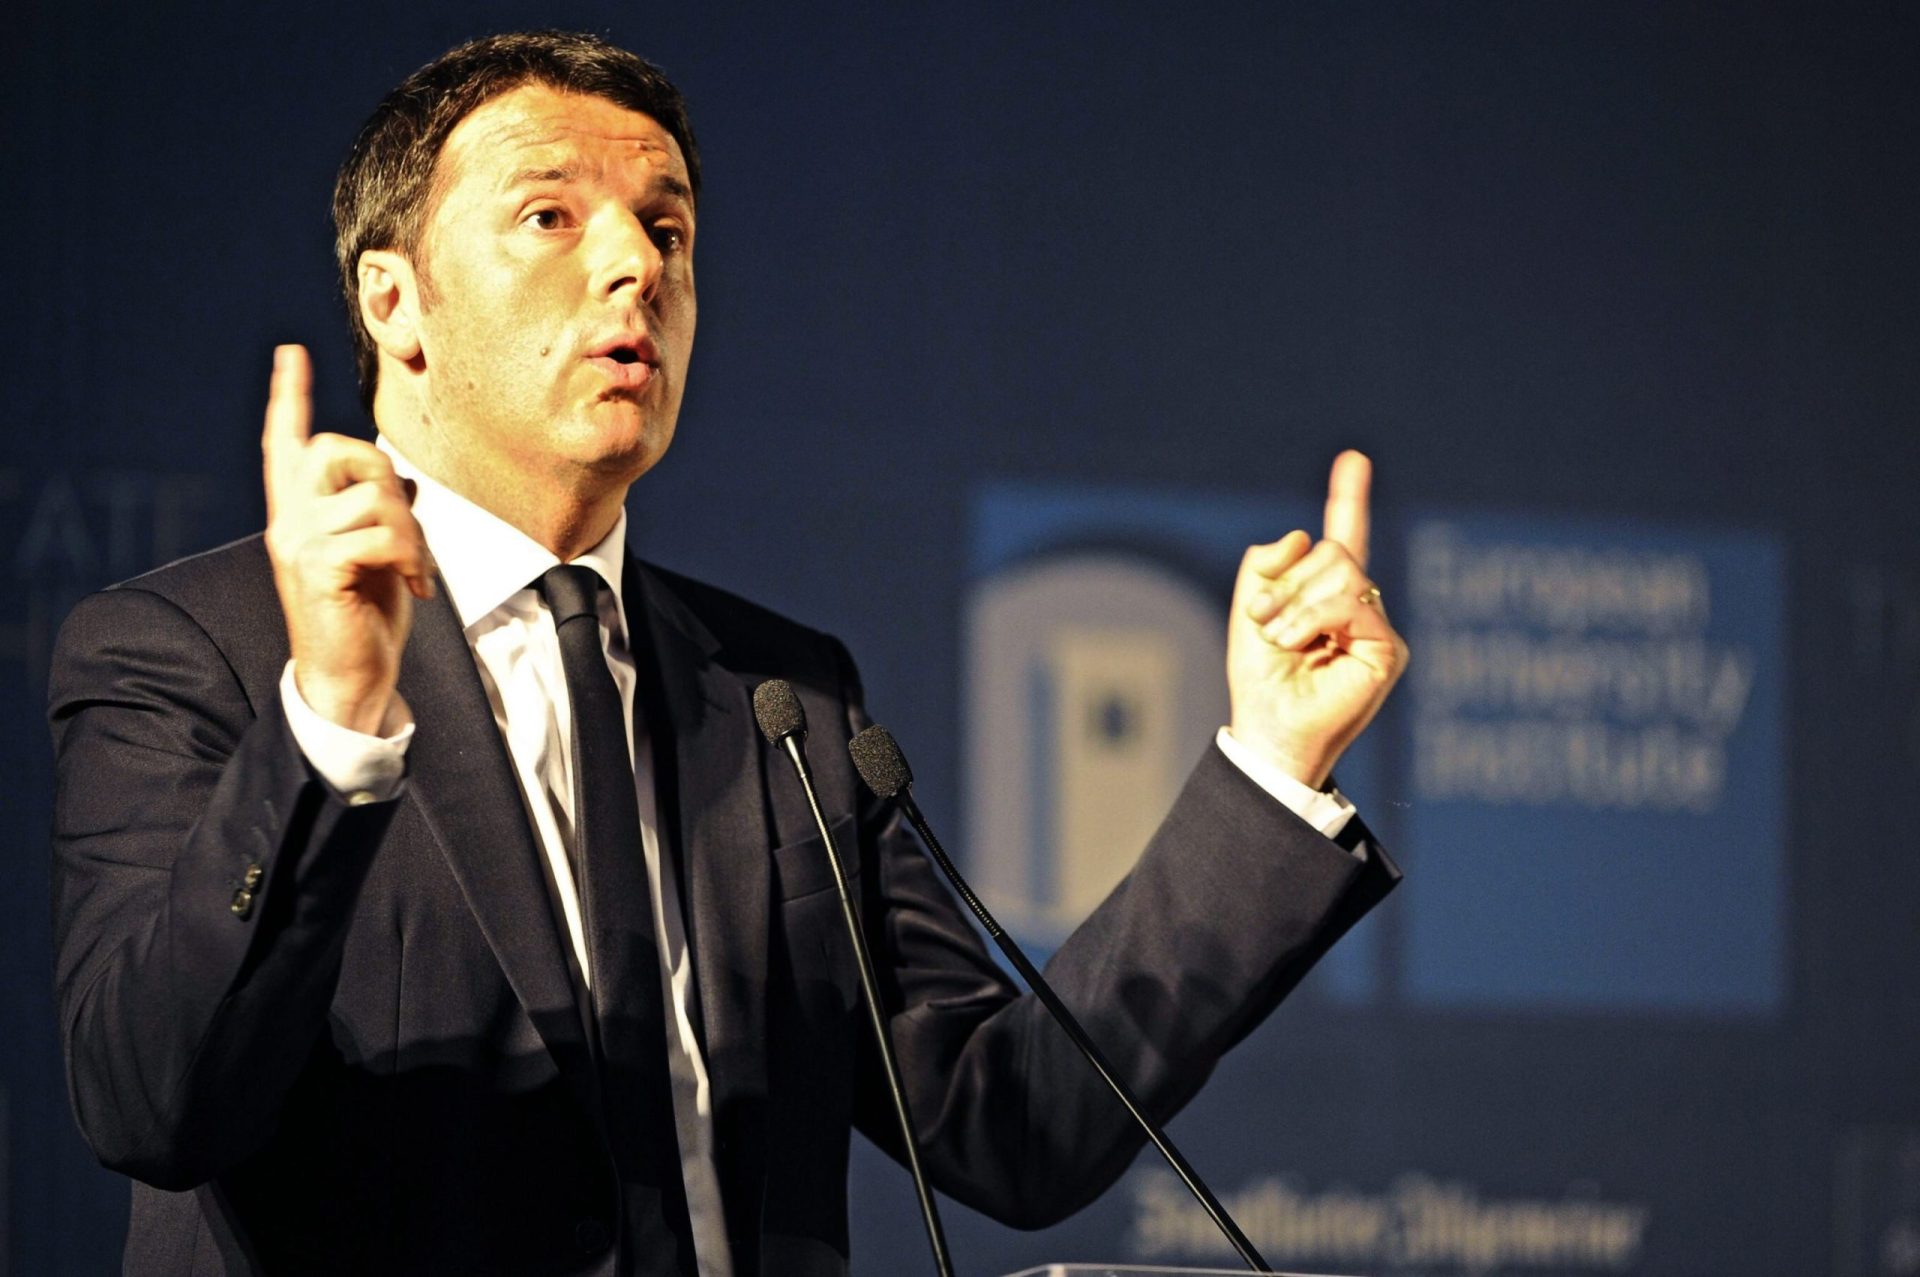 Finito, diz Renzi das coligações